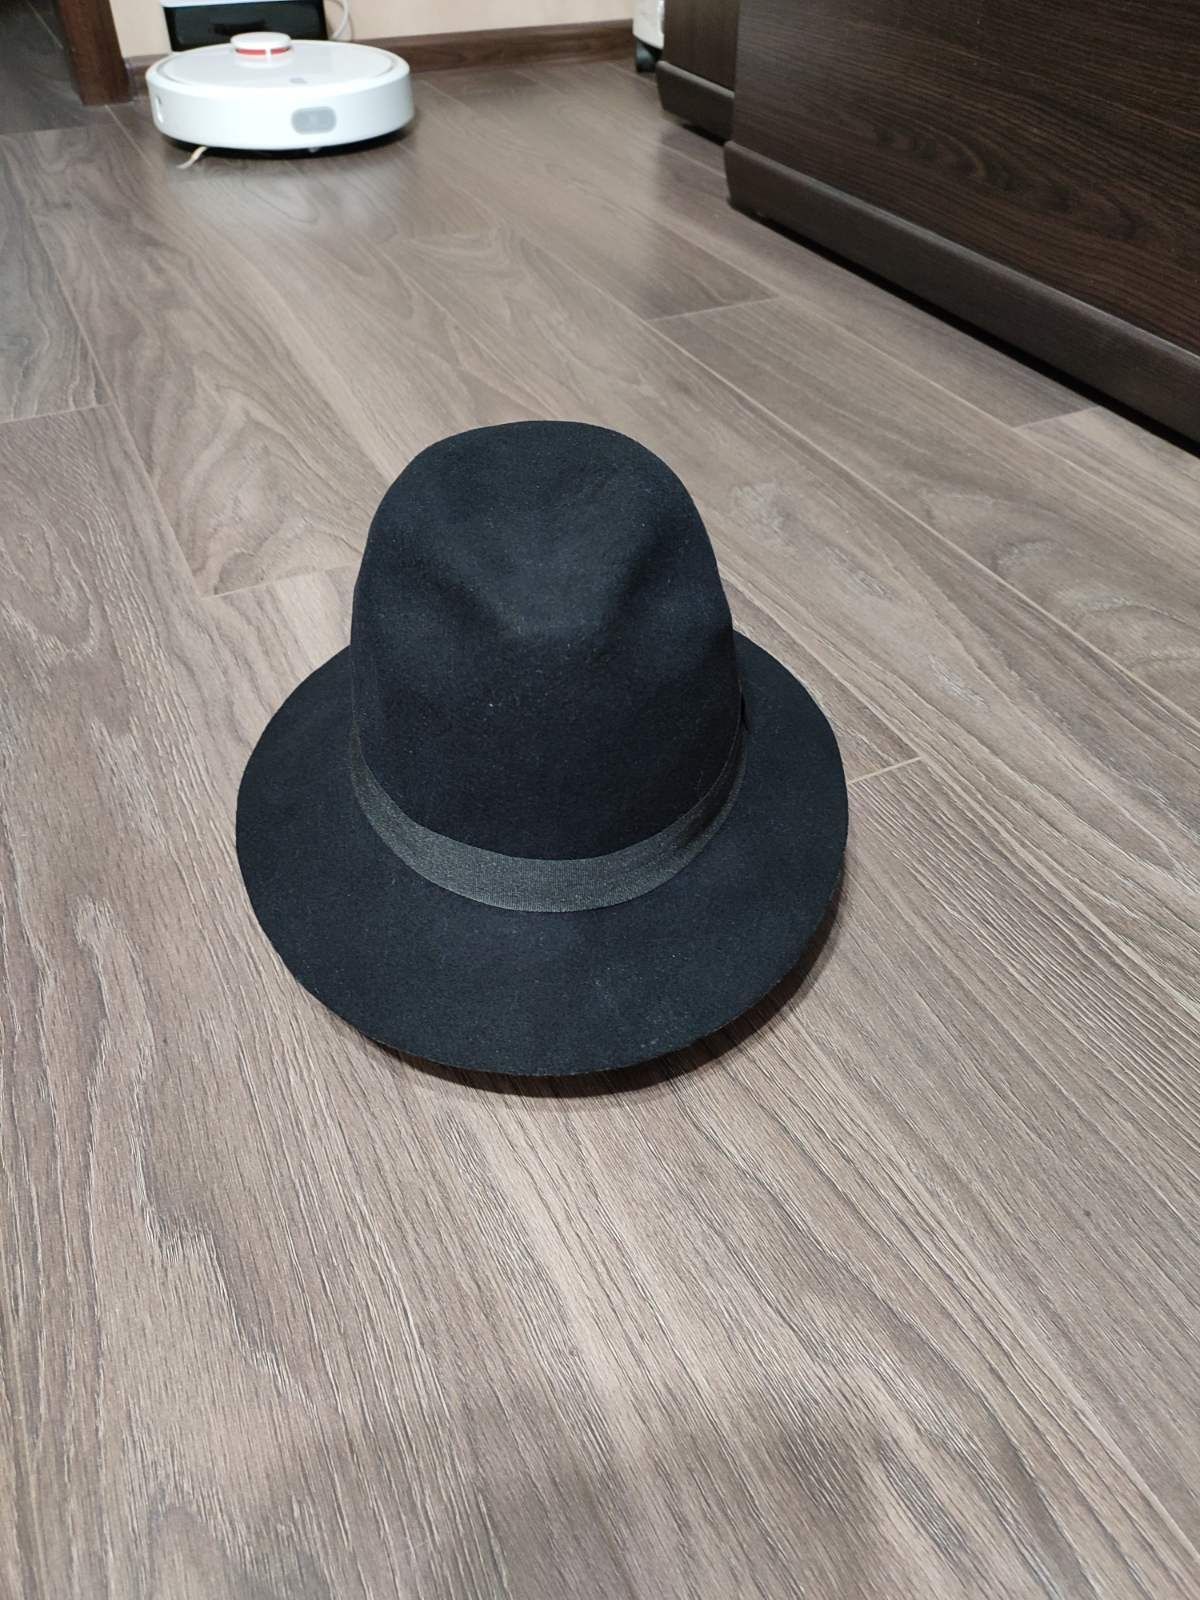 Шляпка 100% шерсть Avenue